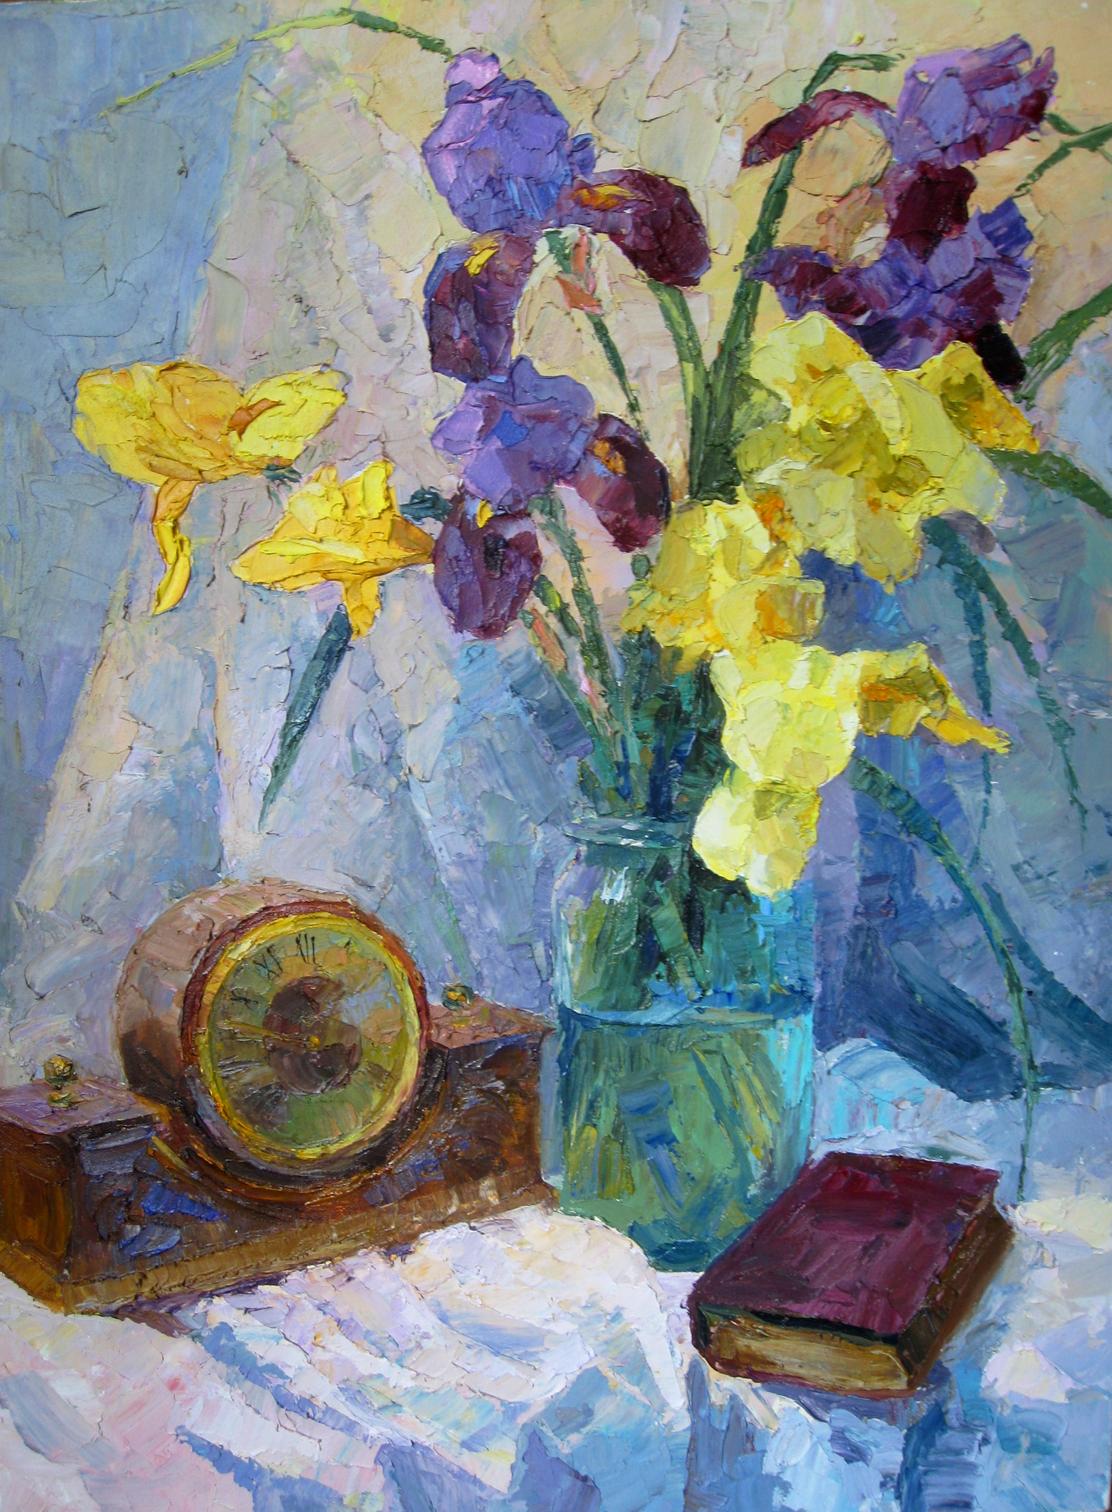 Oil painting Irises Serdyuk Boris Petrovich №SERB 88